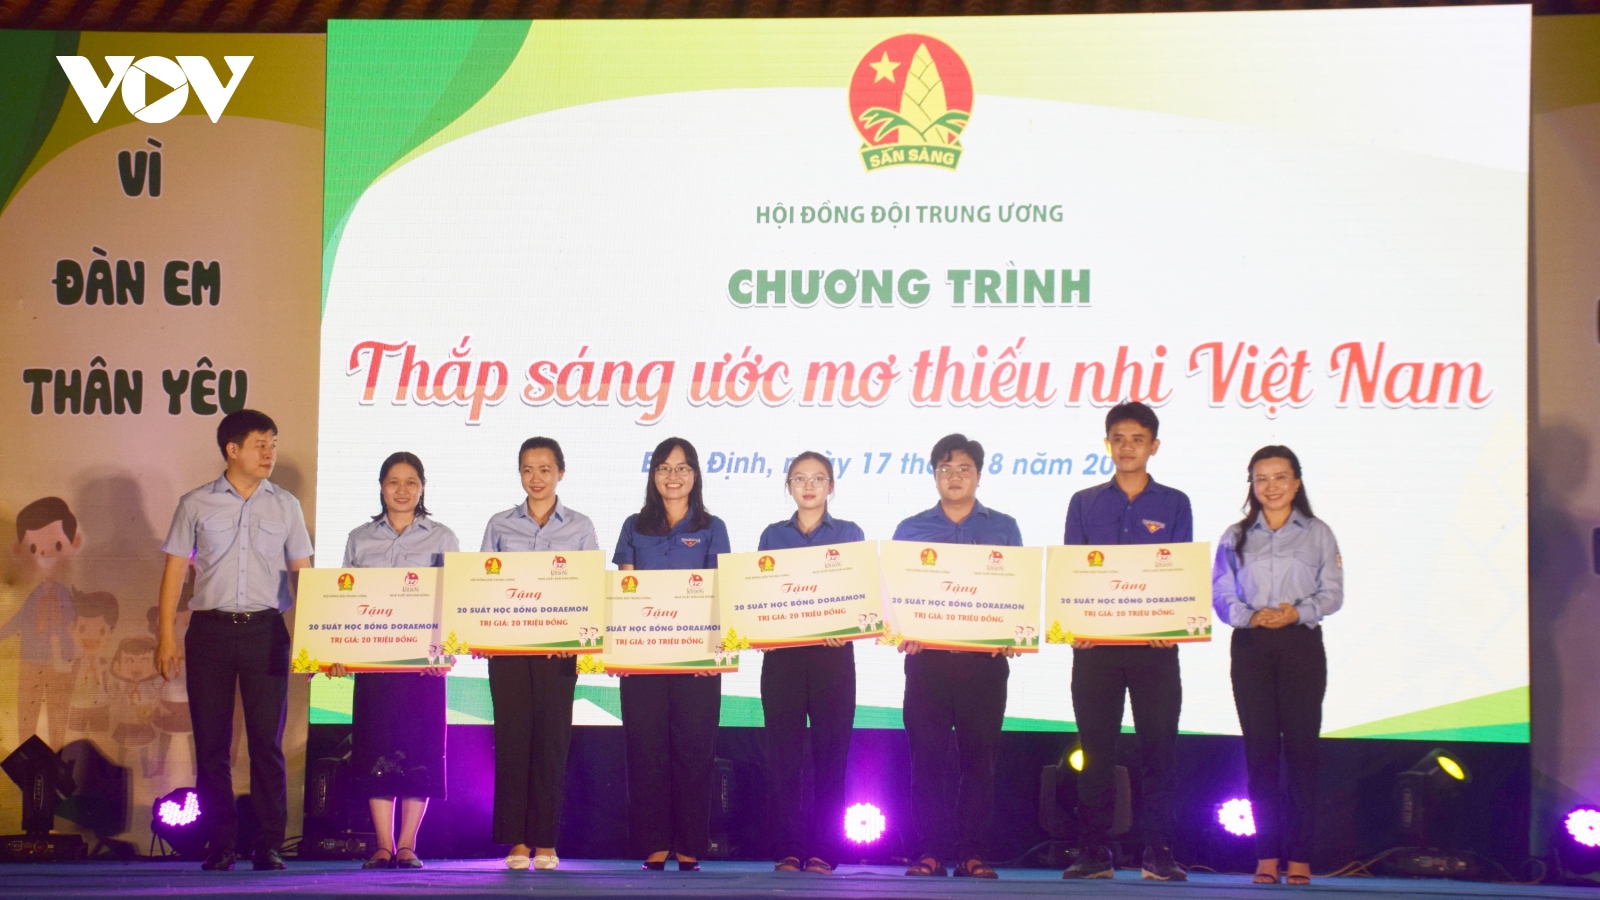 Hội đồng Đội Trung ương tổ chức chương trình Thắp sáng ước mơ thiếu nhi Việt Nam